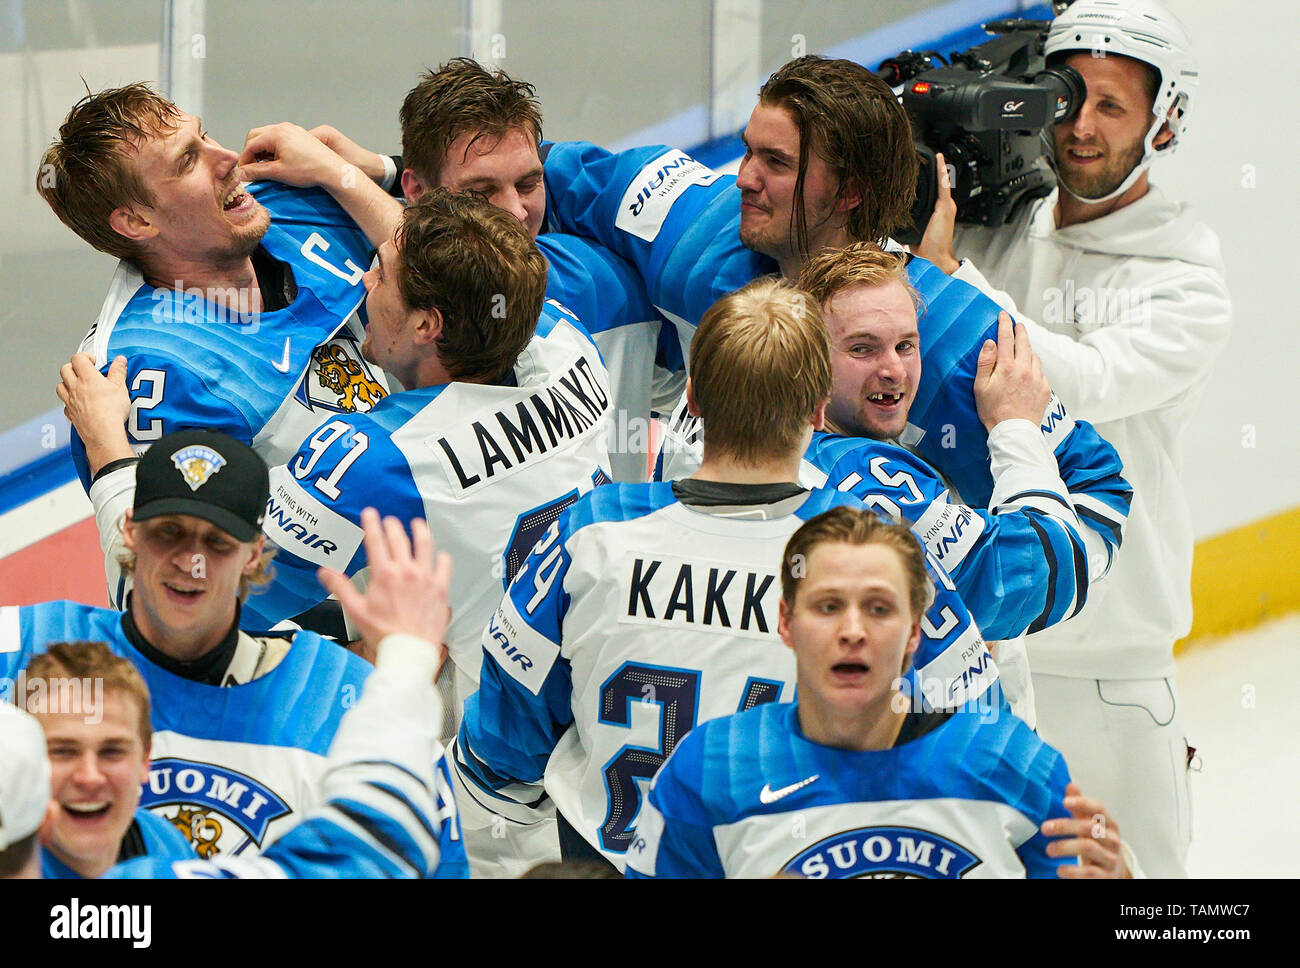 Bratislava, Slovacchia. 26 Maggio, 2019. La Finlandia ha vinto il titolo e celebrare, tifo, gioia, emozioni, celebrando, ridere, tifo, rallegratevi, sistemando i bracci, stringendo il pugno, celebrare, celebrazione Torjubel, Kaapo KAKKO, aletta 24, carta opaca, OHTAMAA pinna 55 Marko Anttila, aletta 12 Oliwer KASKI, FIN 7 CANADA - FINLANDIA 1-3 Kanada - Finnland FINAL IIHF Hockey su ghiaccio ai campionati mondiali di Bratislava, Slovacchia, Slowakei, 26 maggio 2019, STAGIONE 2018/2019, Credito: Peter Schatz/Alamy Live News Foto Stock